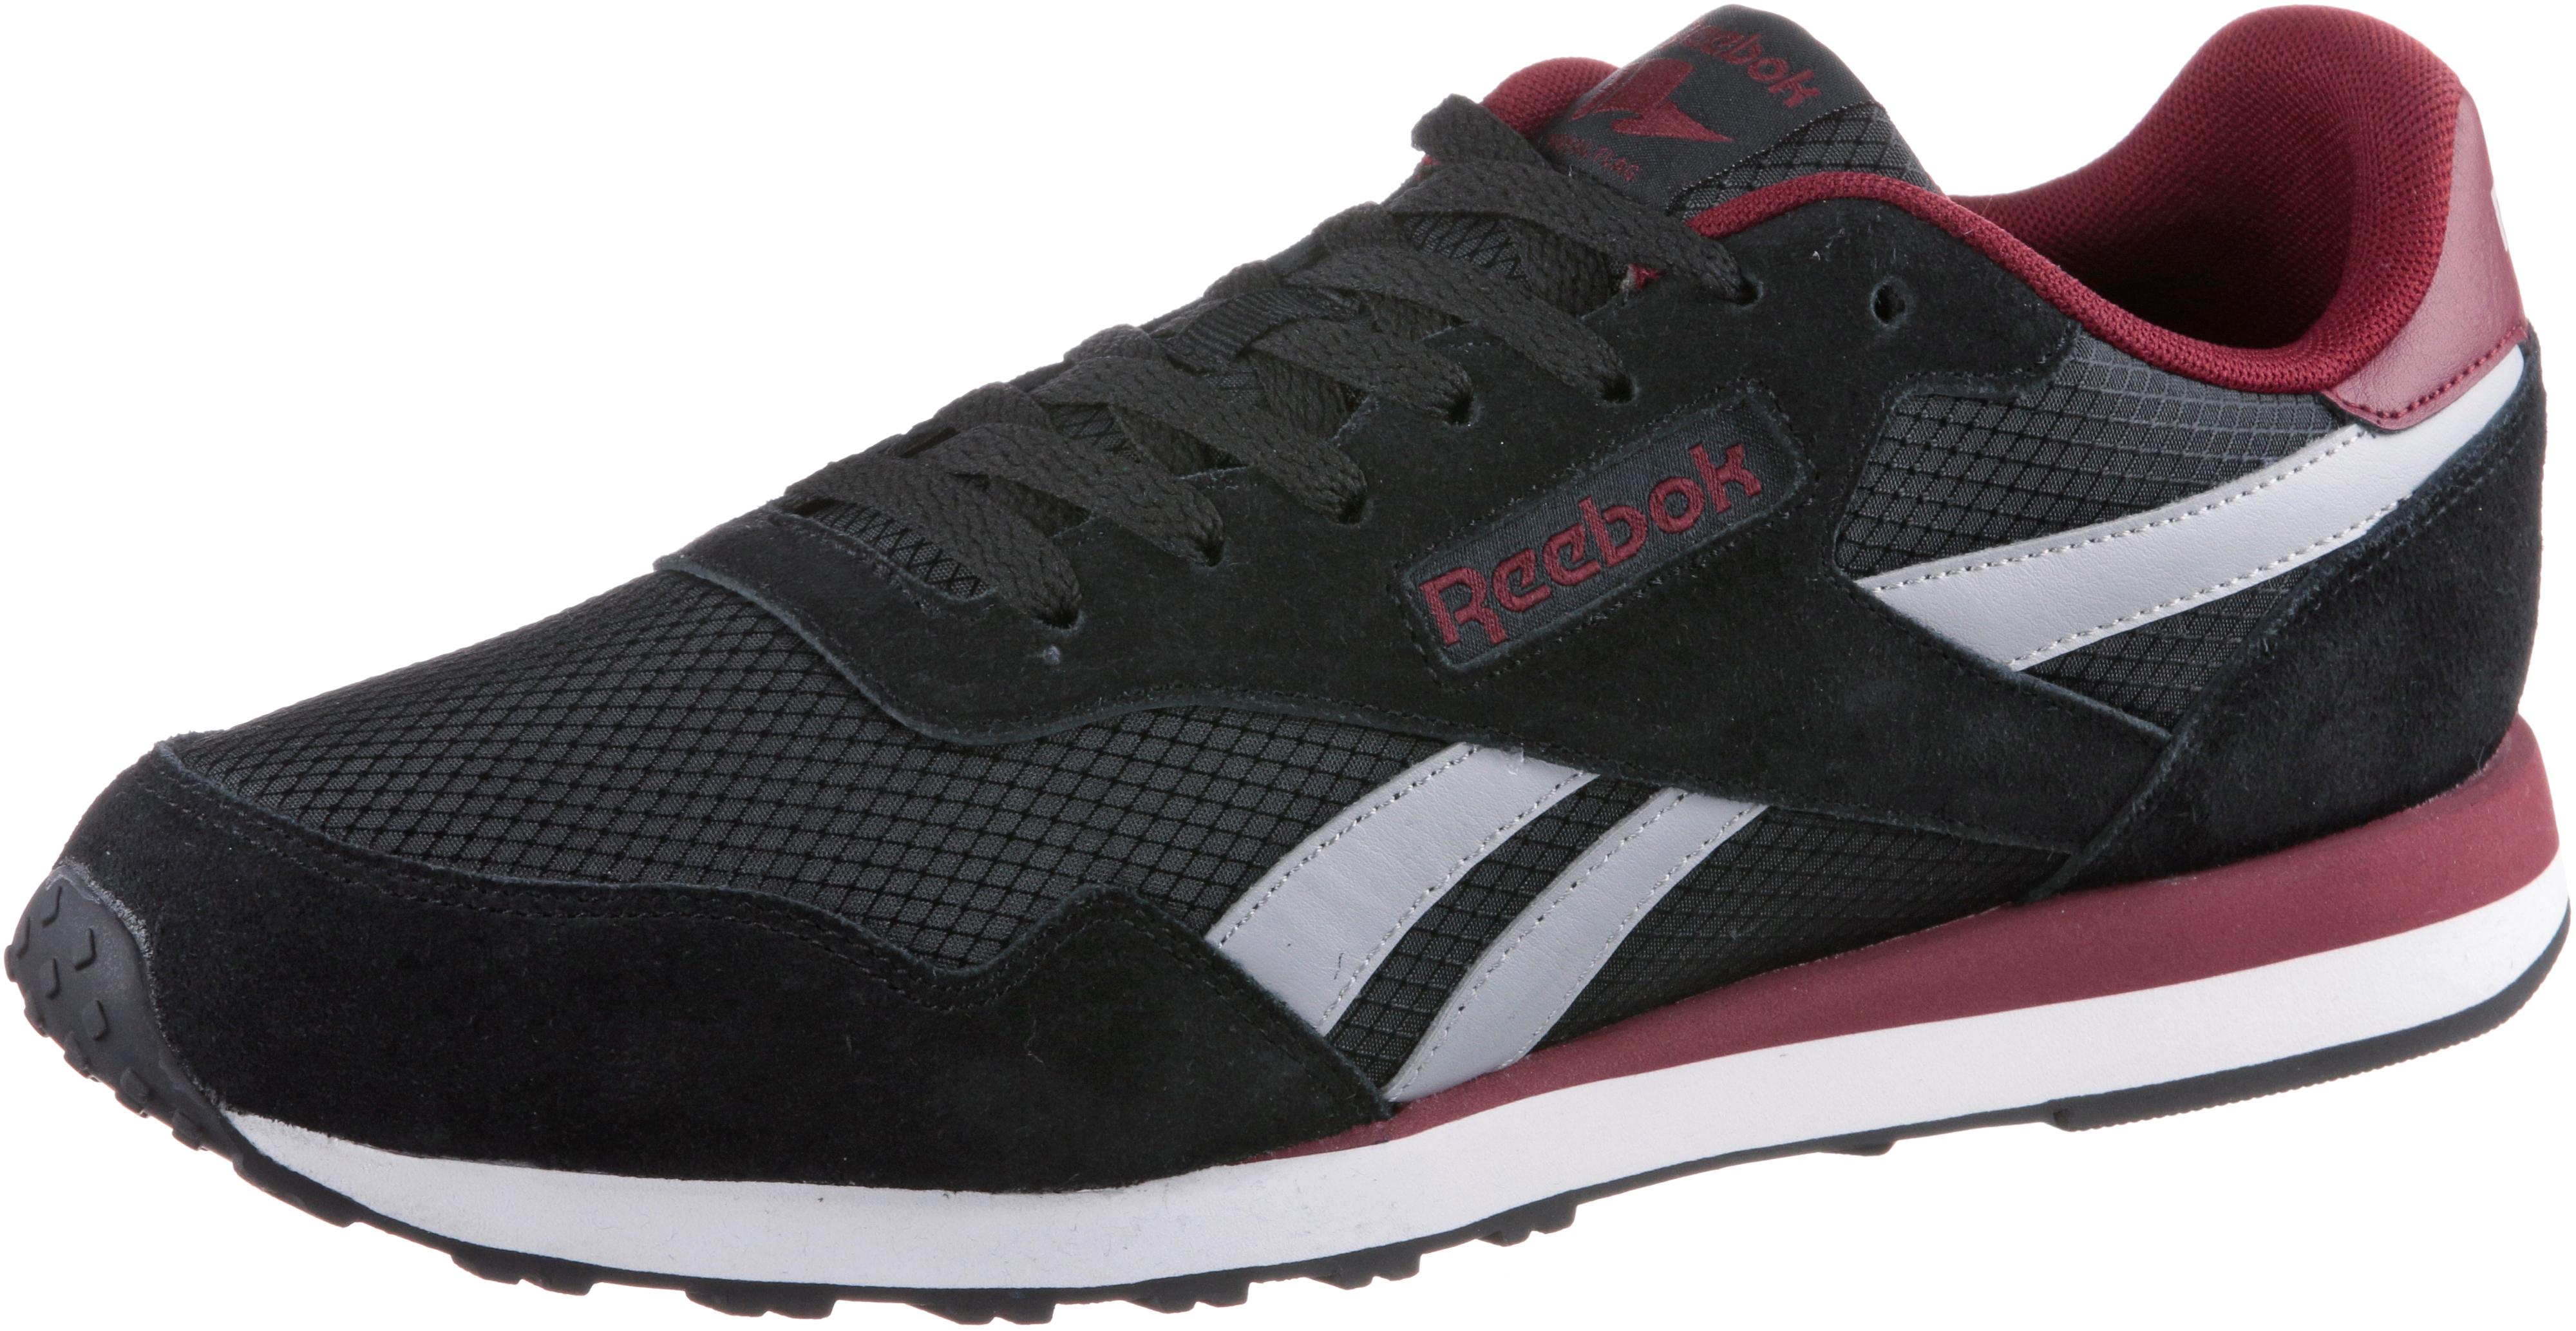 Reebok ROYAL ULTRA Sneaker Herren black-lgh solid grey-collegiat  burdundy-white im Online Shop von SportScheck kaufen